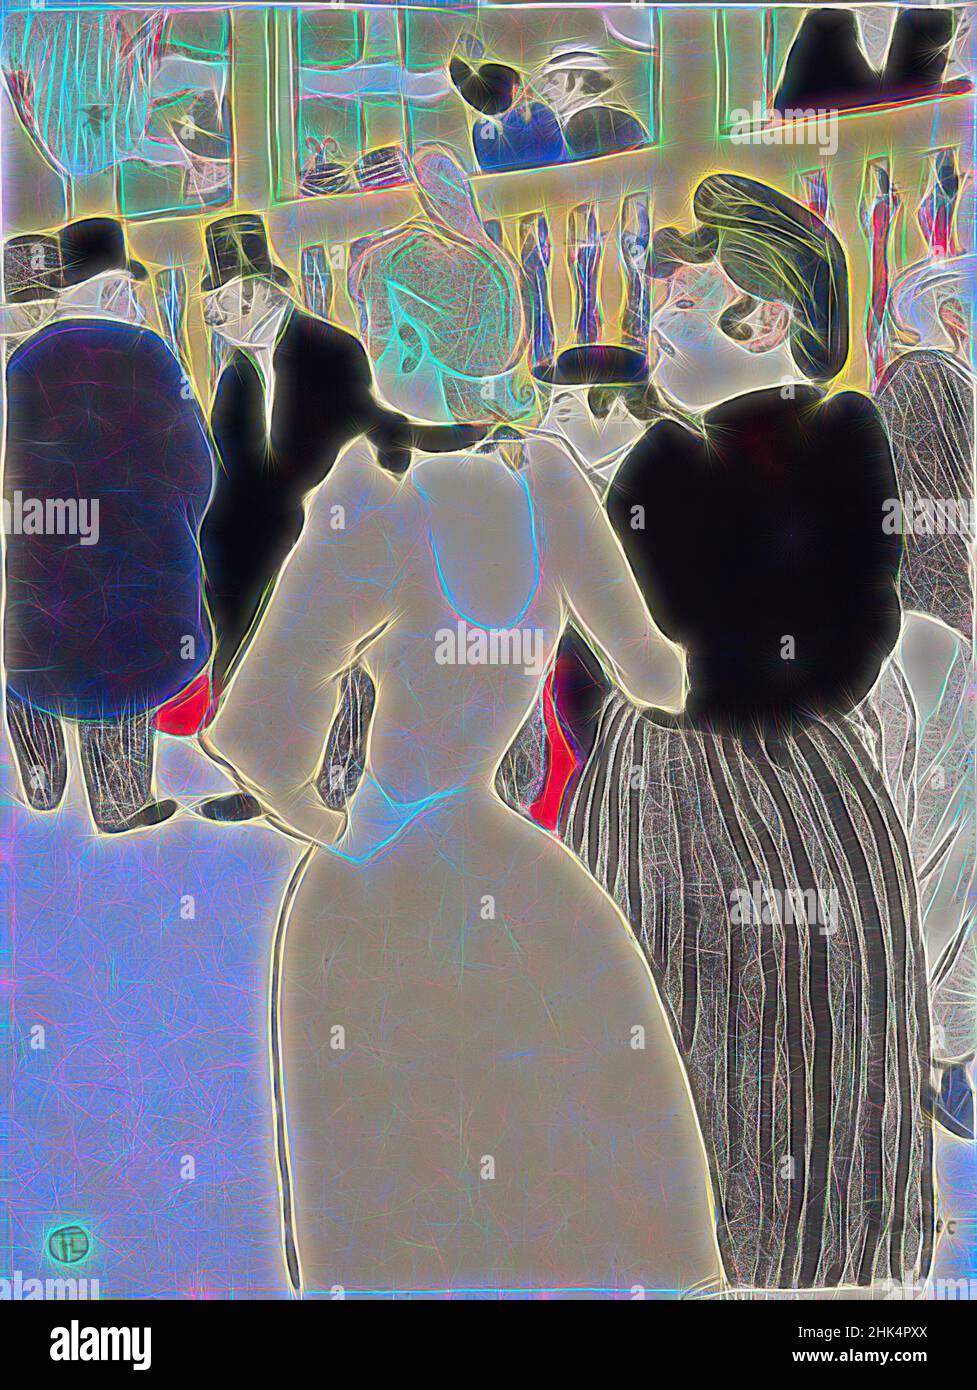 Inspiré par au Moulin Rouge, au Moulin Rouge, Henri de Toulouse-Lautrec, français, 1864-1901, Lithographie sur papier vélin, 1892, feuille: 23 15/16 x 18 5/16 po., 60,8 x 46,5 cm, Belle Epoque, Cabaret, Club, demi-monde, Entertainment, France, Français, la, la Goulue et sa sœur, la Troisieme Rebuplique, revisitée par Artotop. L'art classique réinventé avec une touche moderne. Conception de lumière chaleureuse et gaie, de luminosité et de rayonnement de lumière. La photographie s'inspire du surréalisme et du futurisme, embrassant l'énergie dynamique de la technologie moderne, du mouvement, de la vitesse et révolutionne la culture Banque D'Images